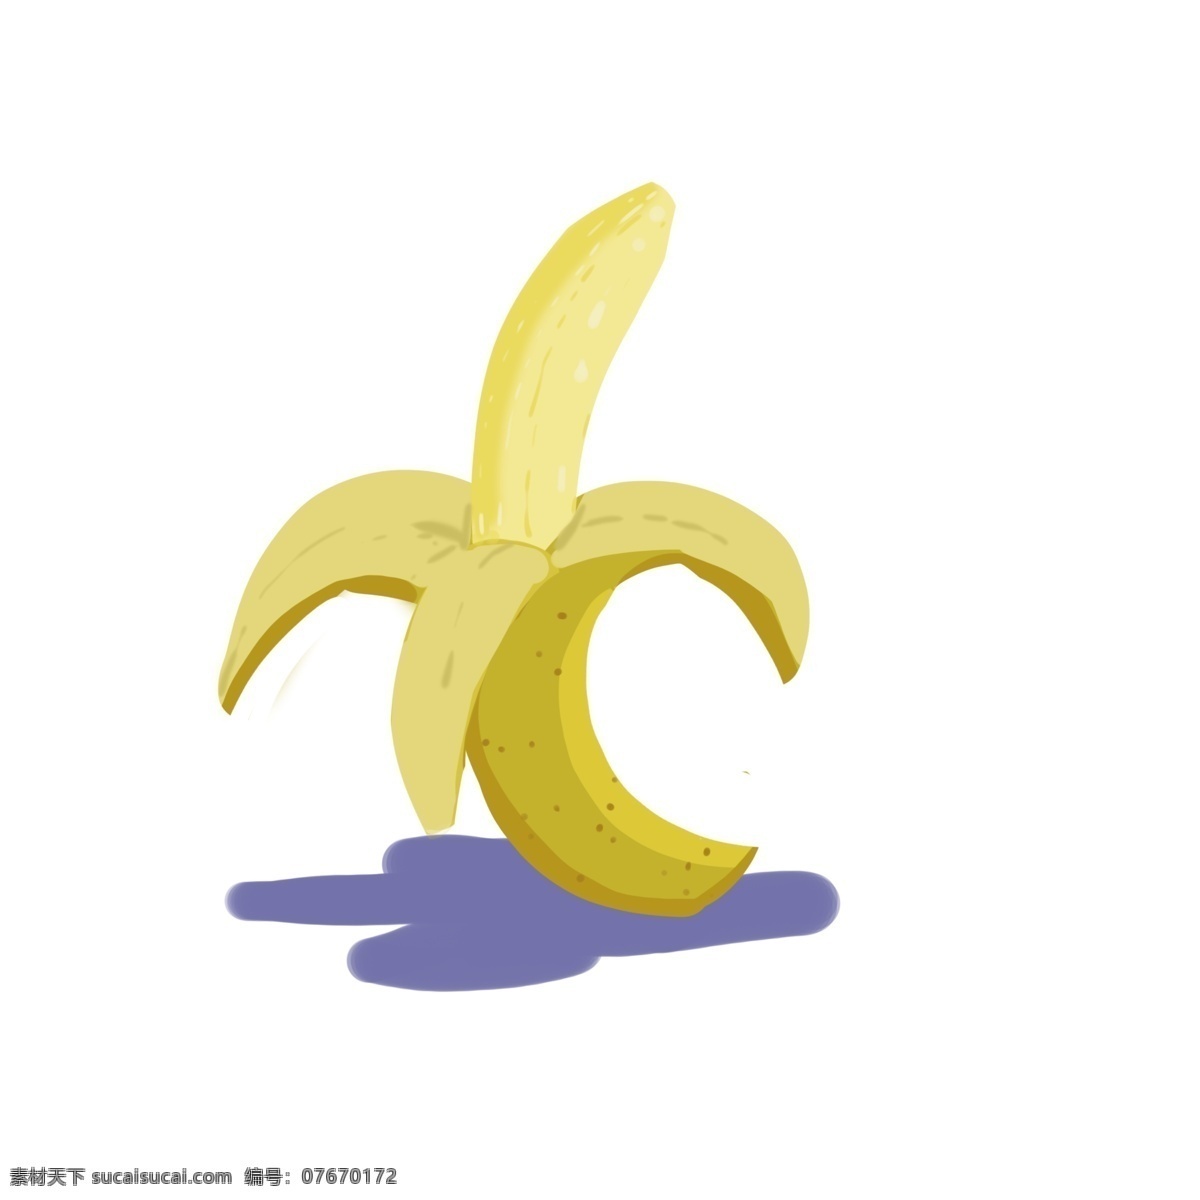 黄色香蕉 黄色 香蕉 卡通 手绘 简洁 可爱